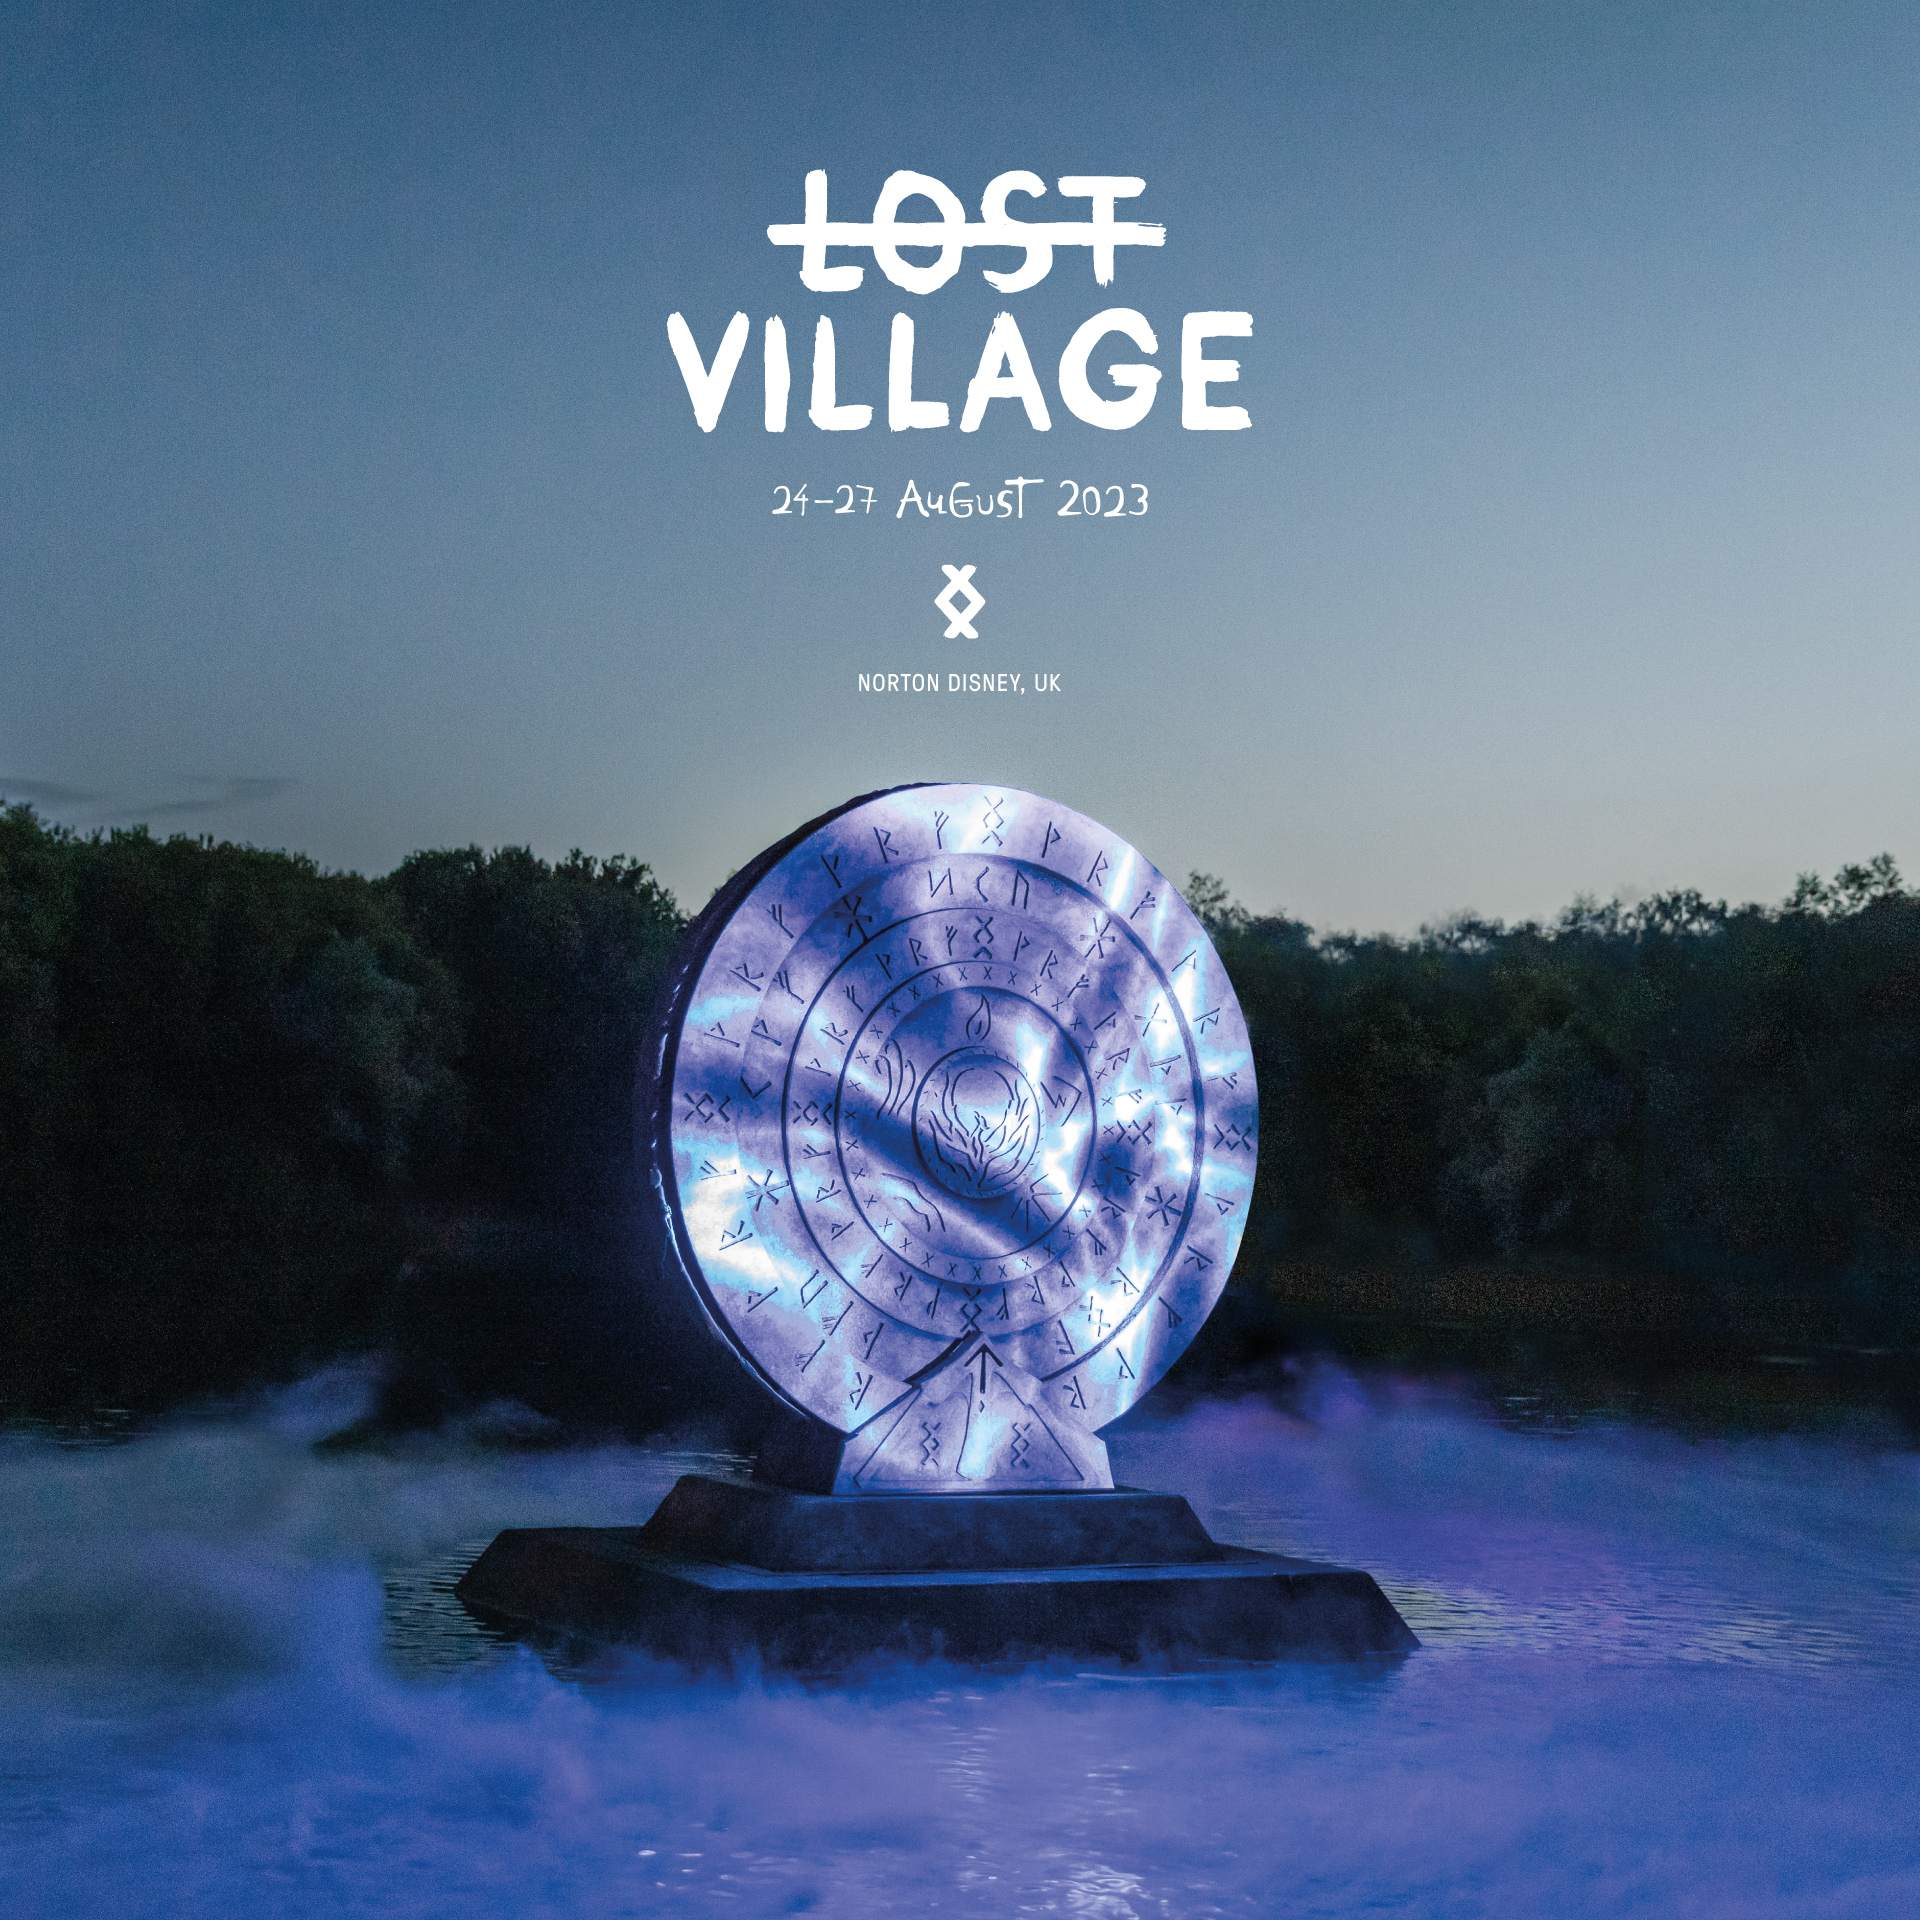 Lost Village 2023 - フライヤー表